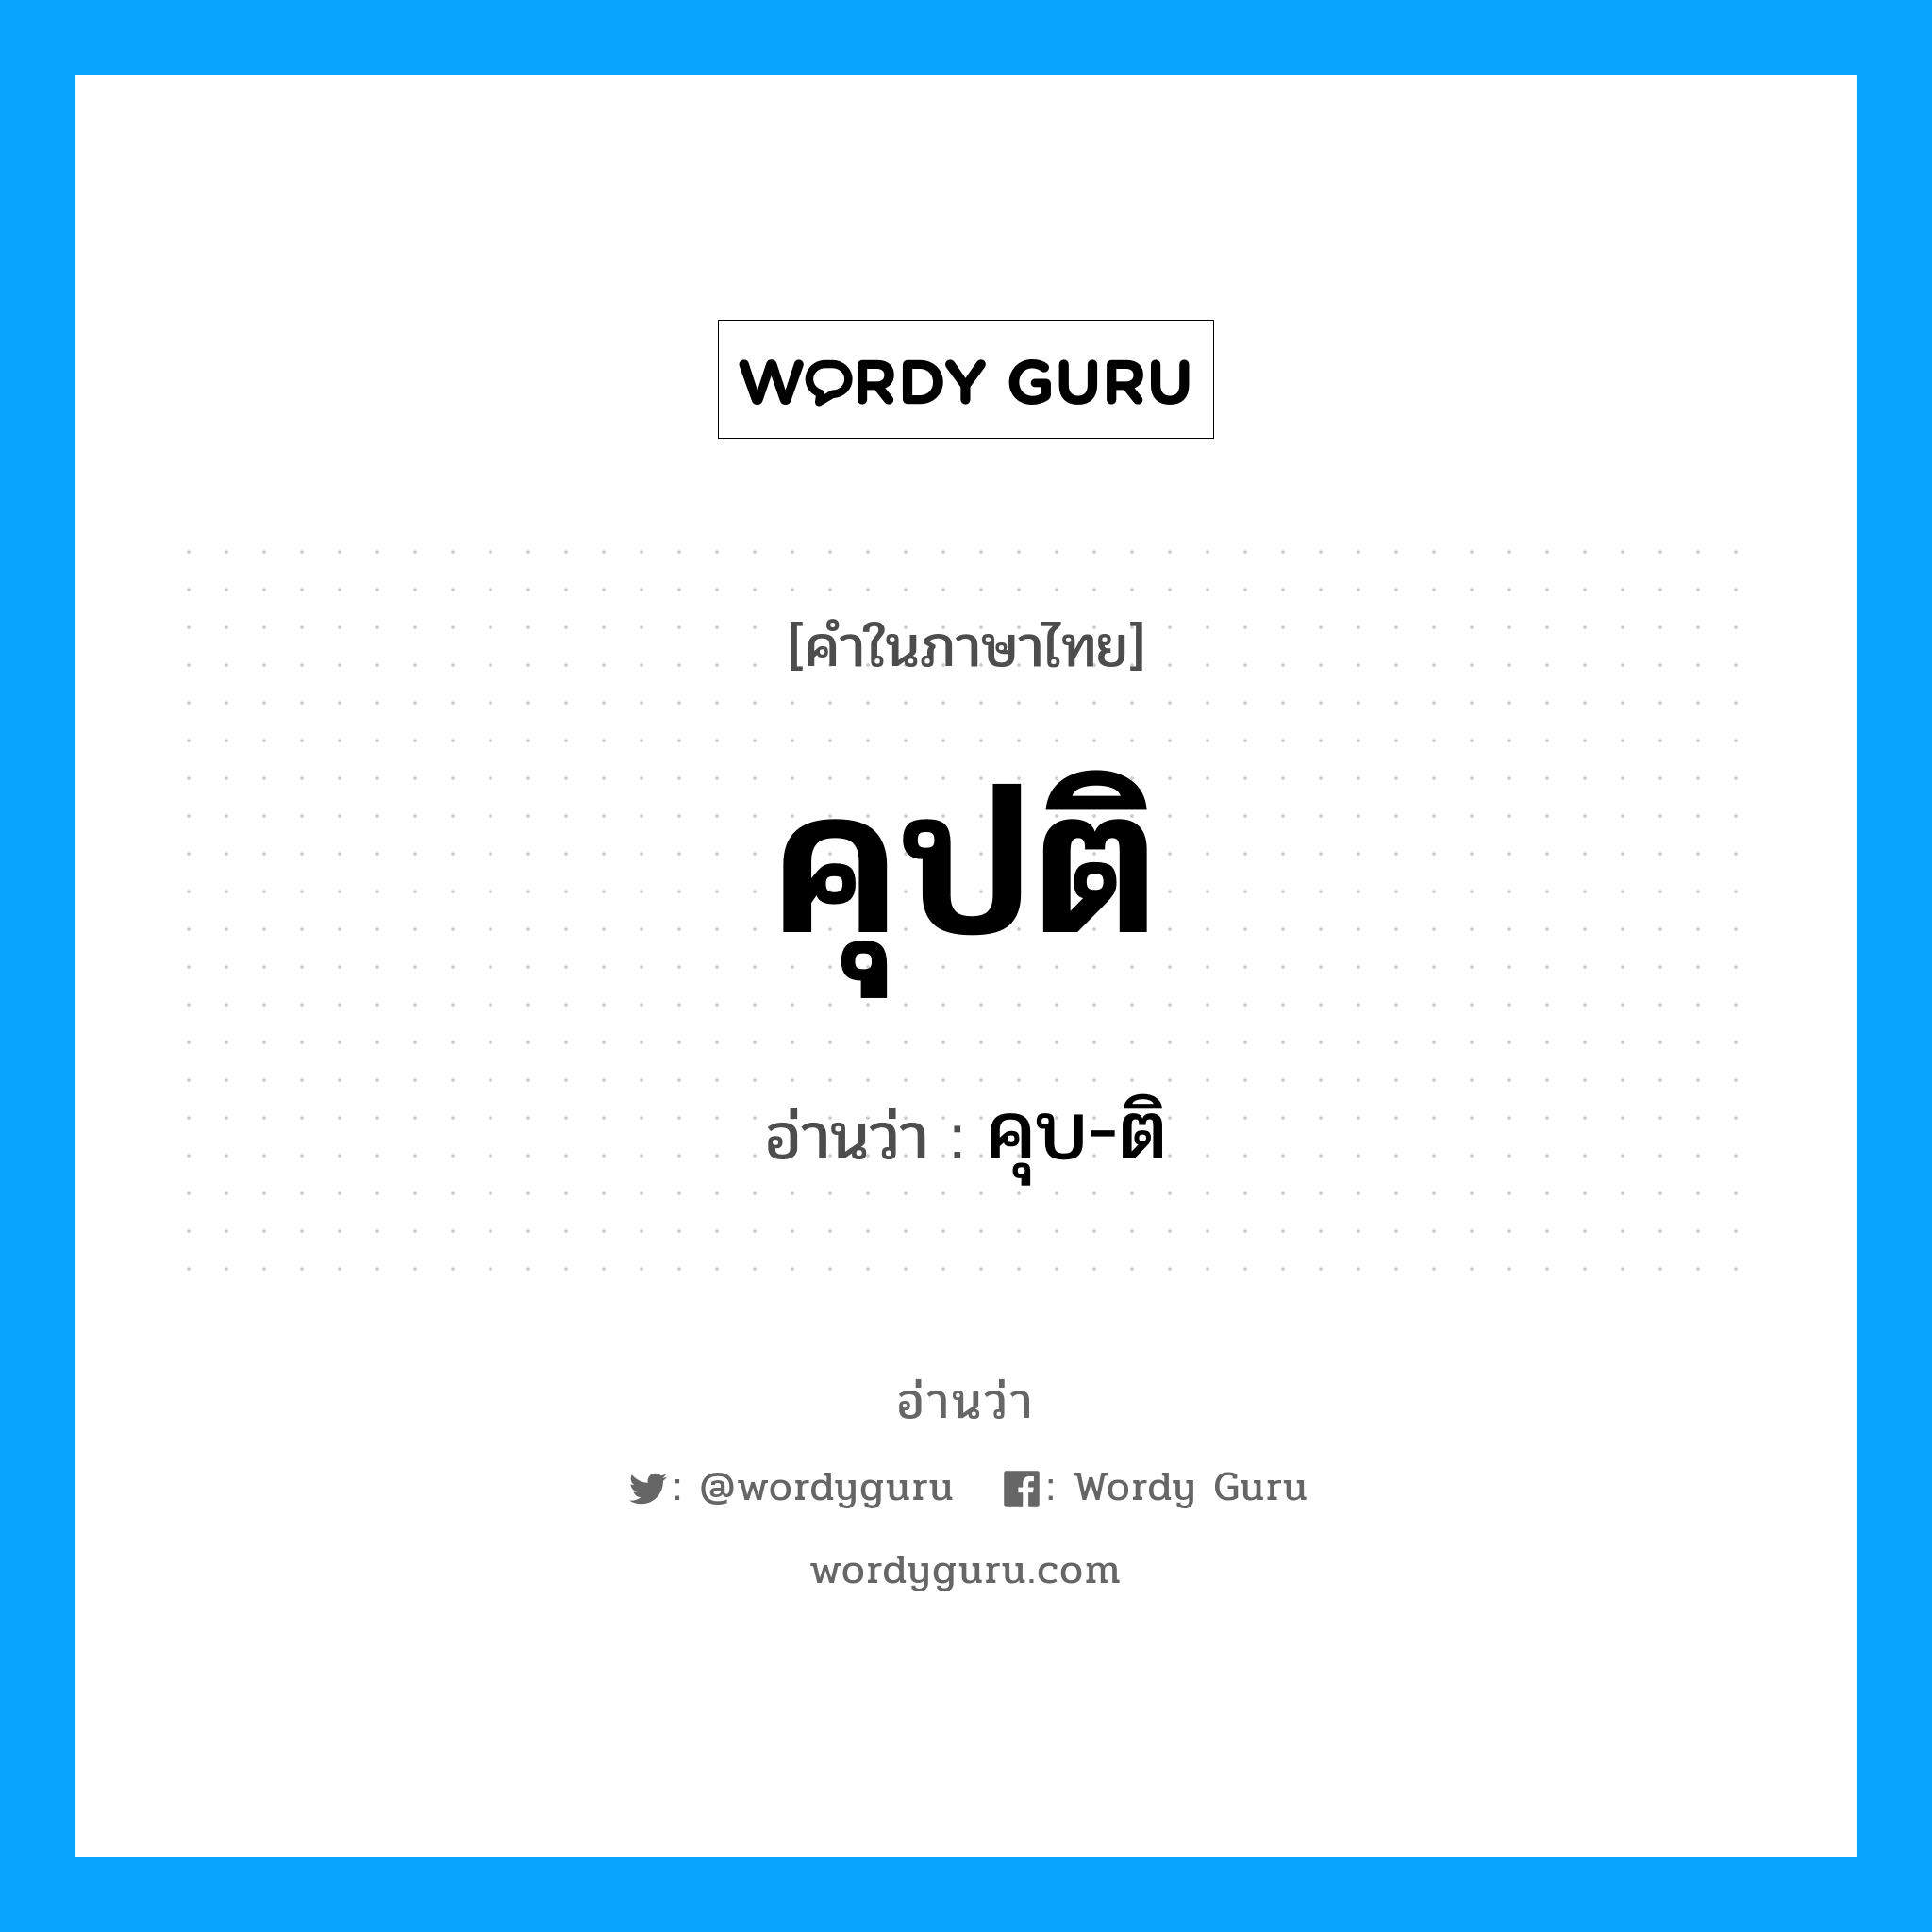 คุบ-ติ เป็นคำอ่านของคำไหน?, คำในภาษาไทย คุบ-ติ อ่านว่า คุปติ